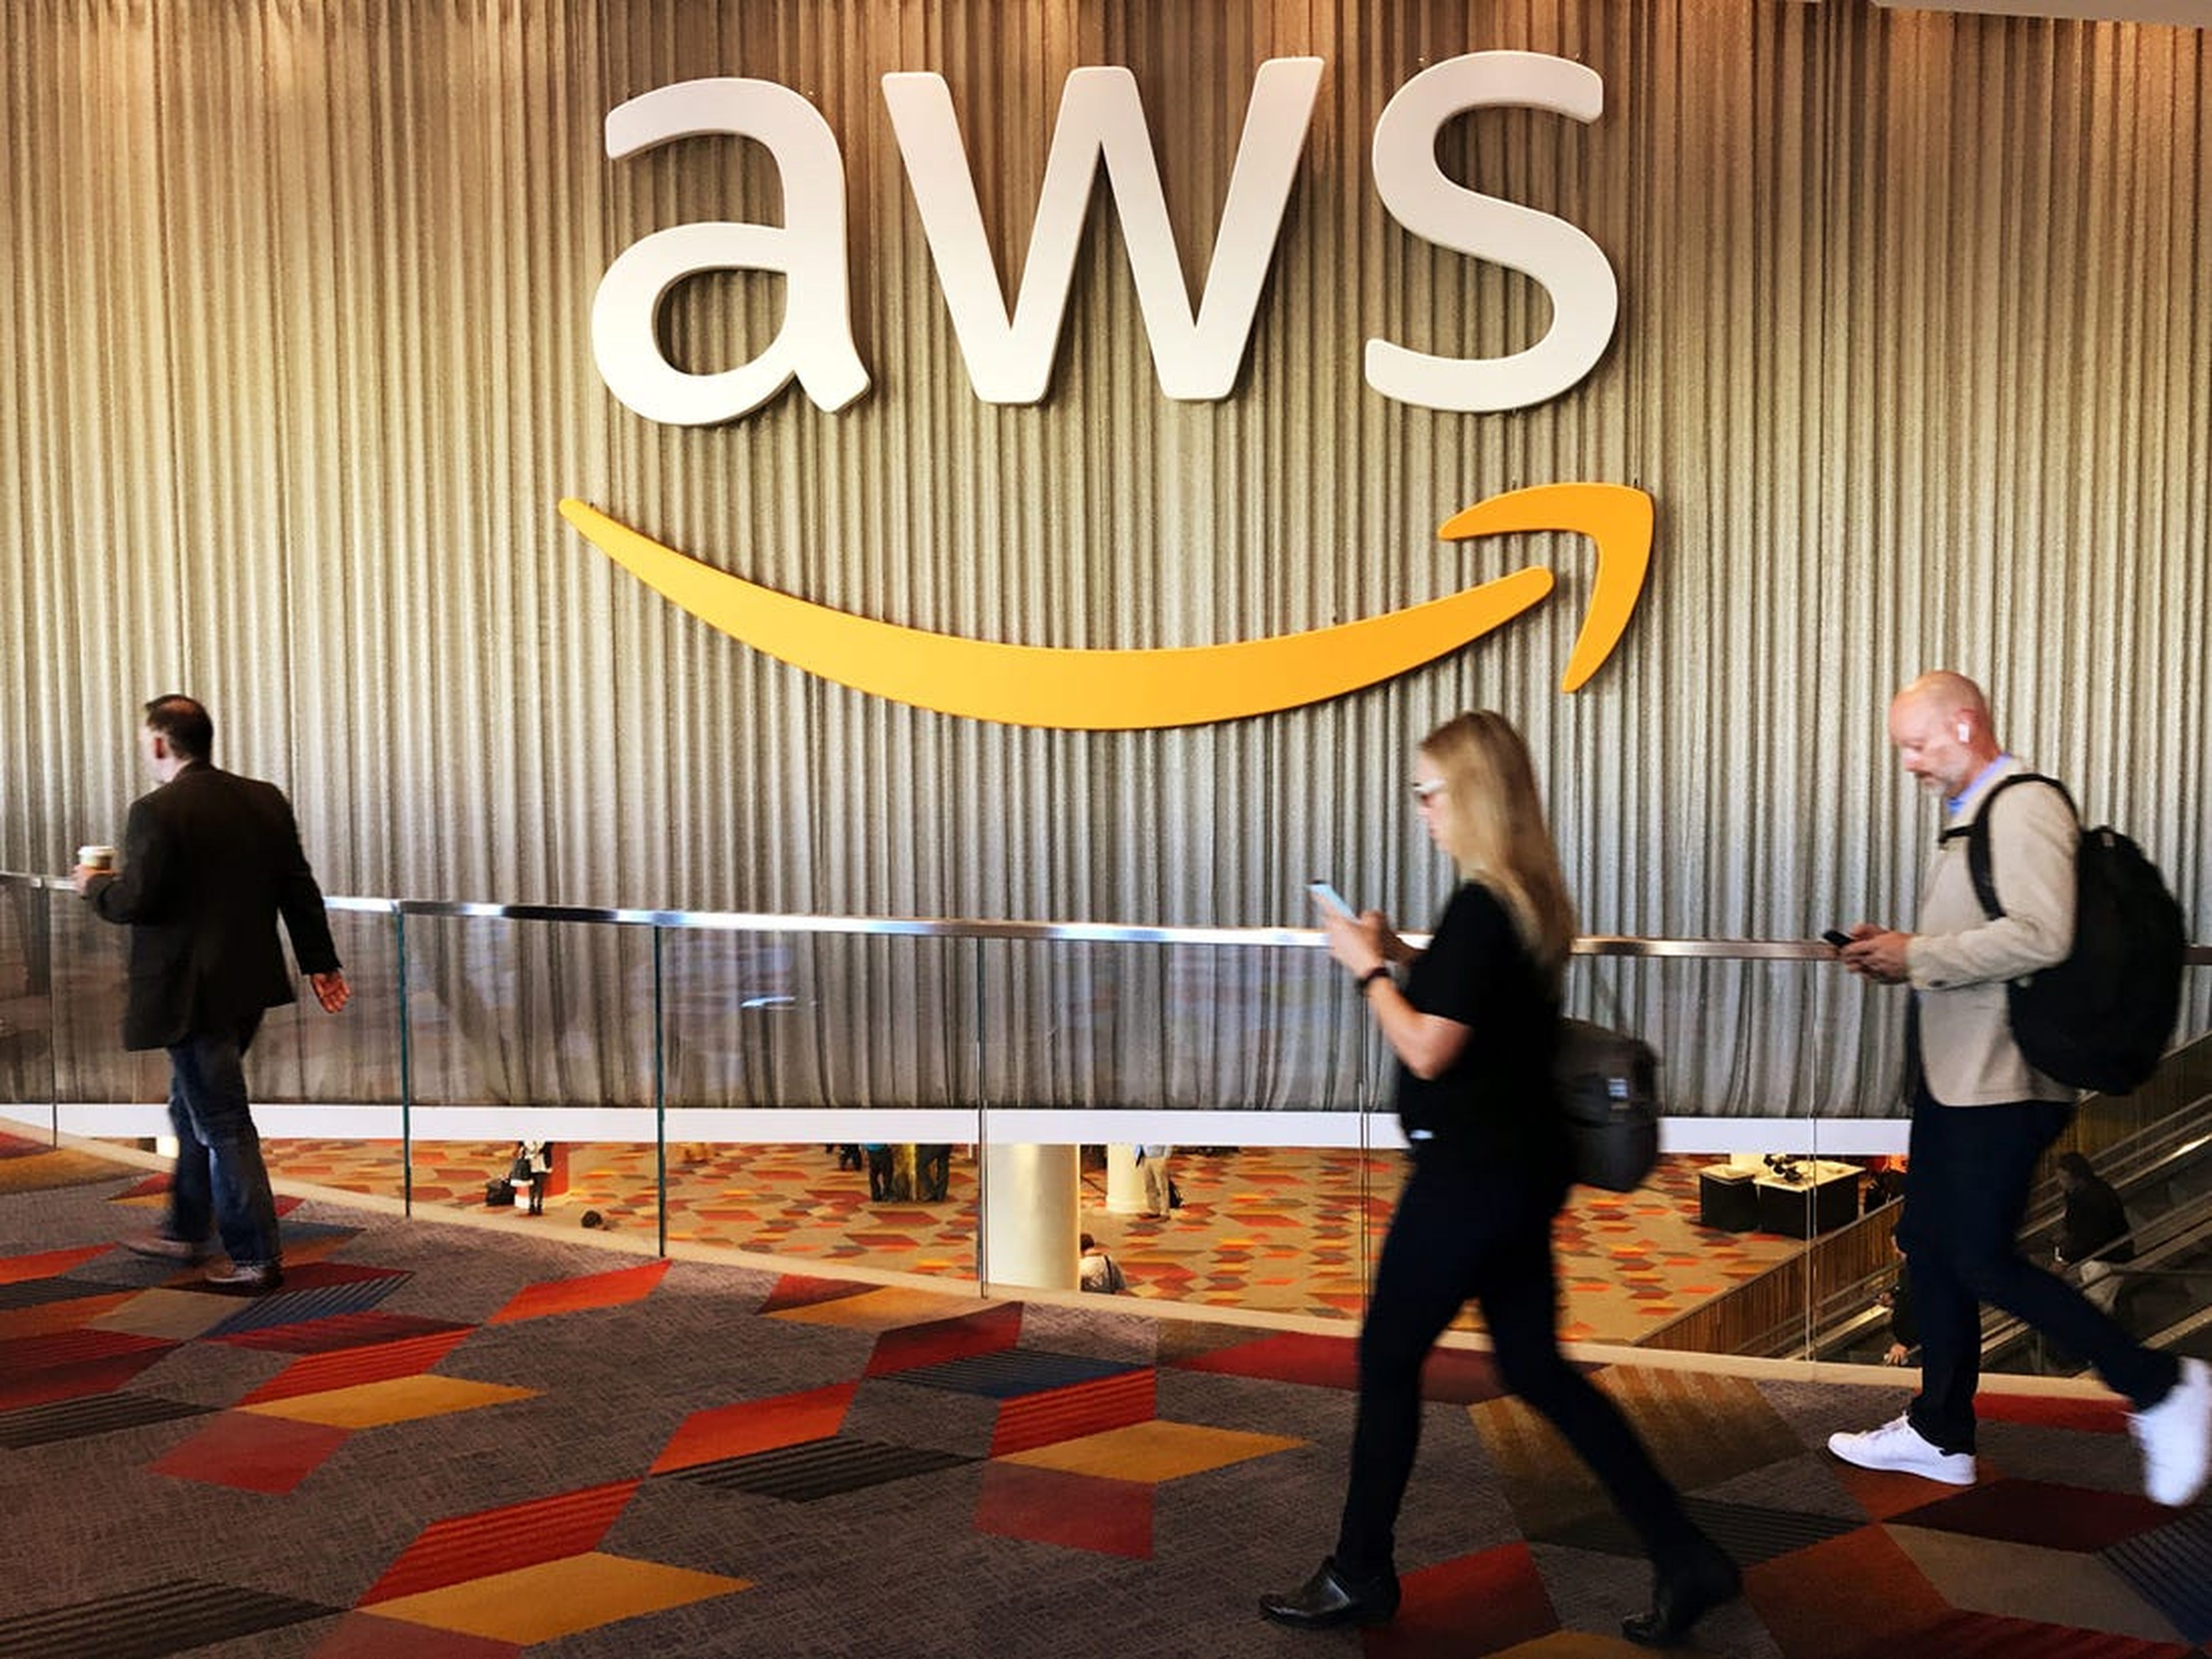 El servicio AWS de Amazon es la infraestructura tecnológica que aloja páginas webs y plataformas como Netflix, Goldman Sachs, Coca-Cola, Johnson & Johnson, Siemens, Shell y Comcast entre otros.